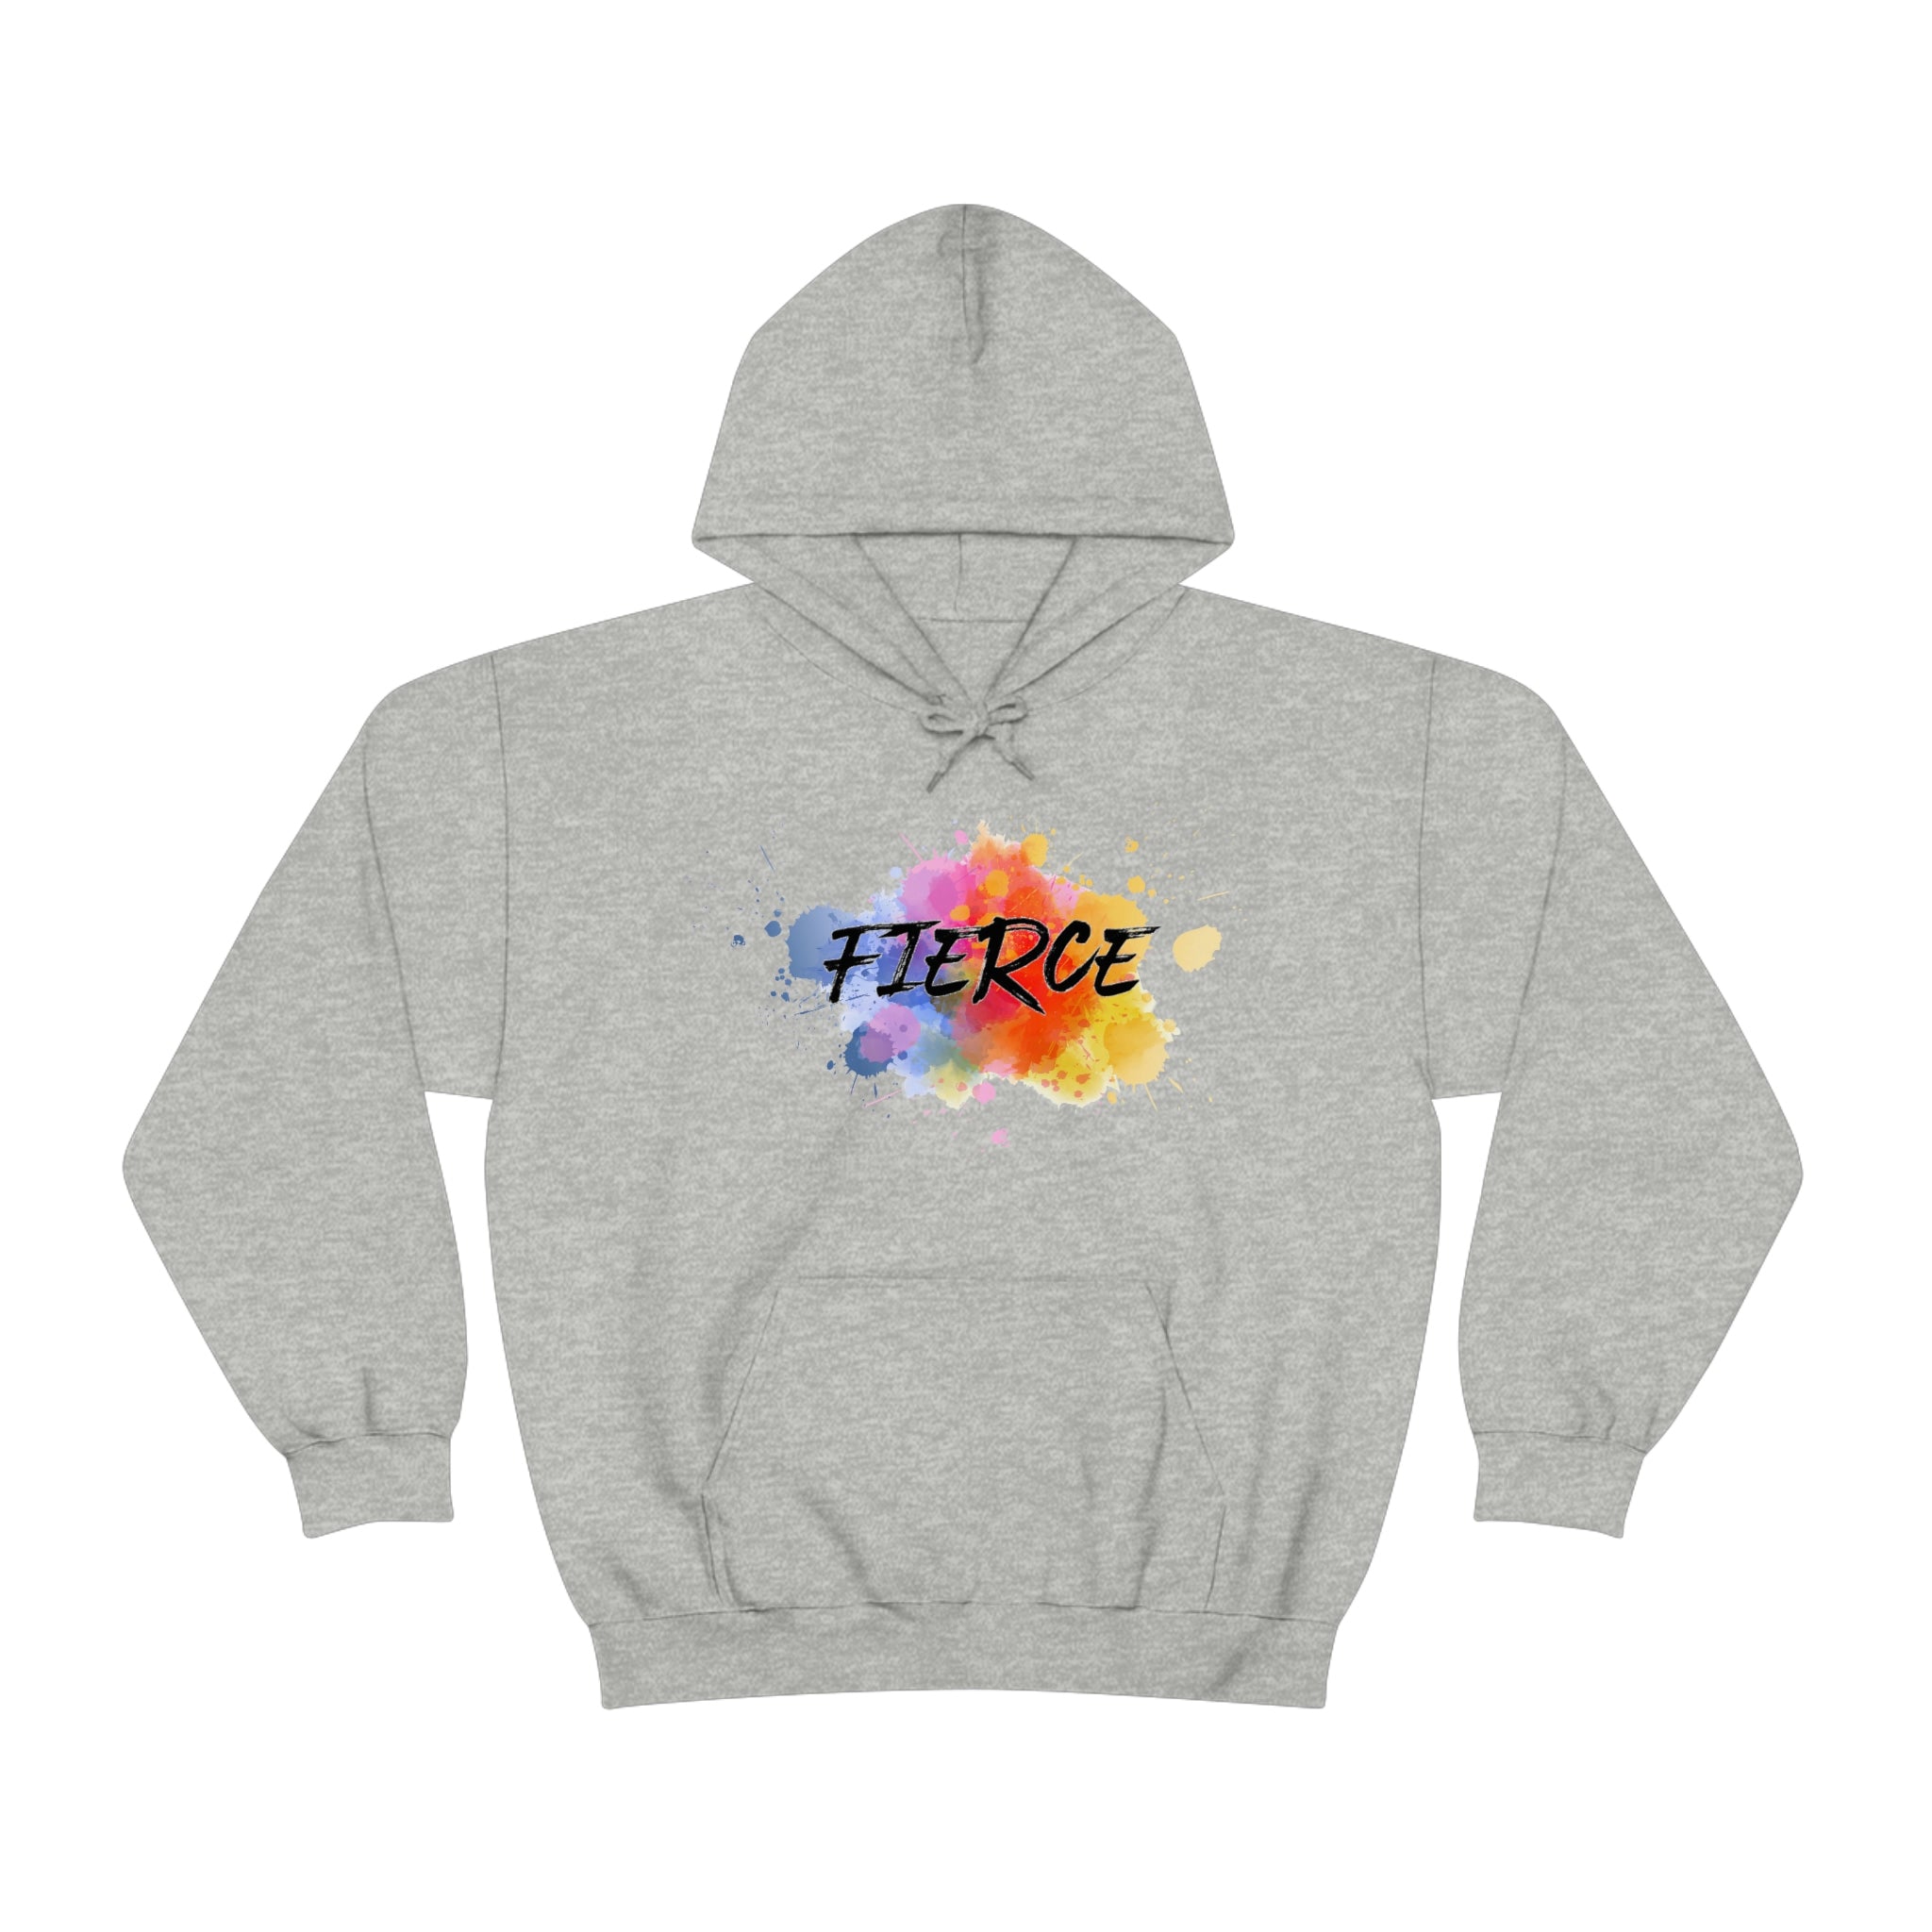 "Fierce" Unisex Heavy Blend™ Hooded Sweatshirt - 5 colors